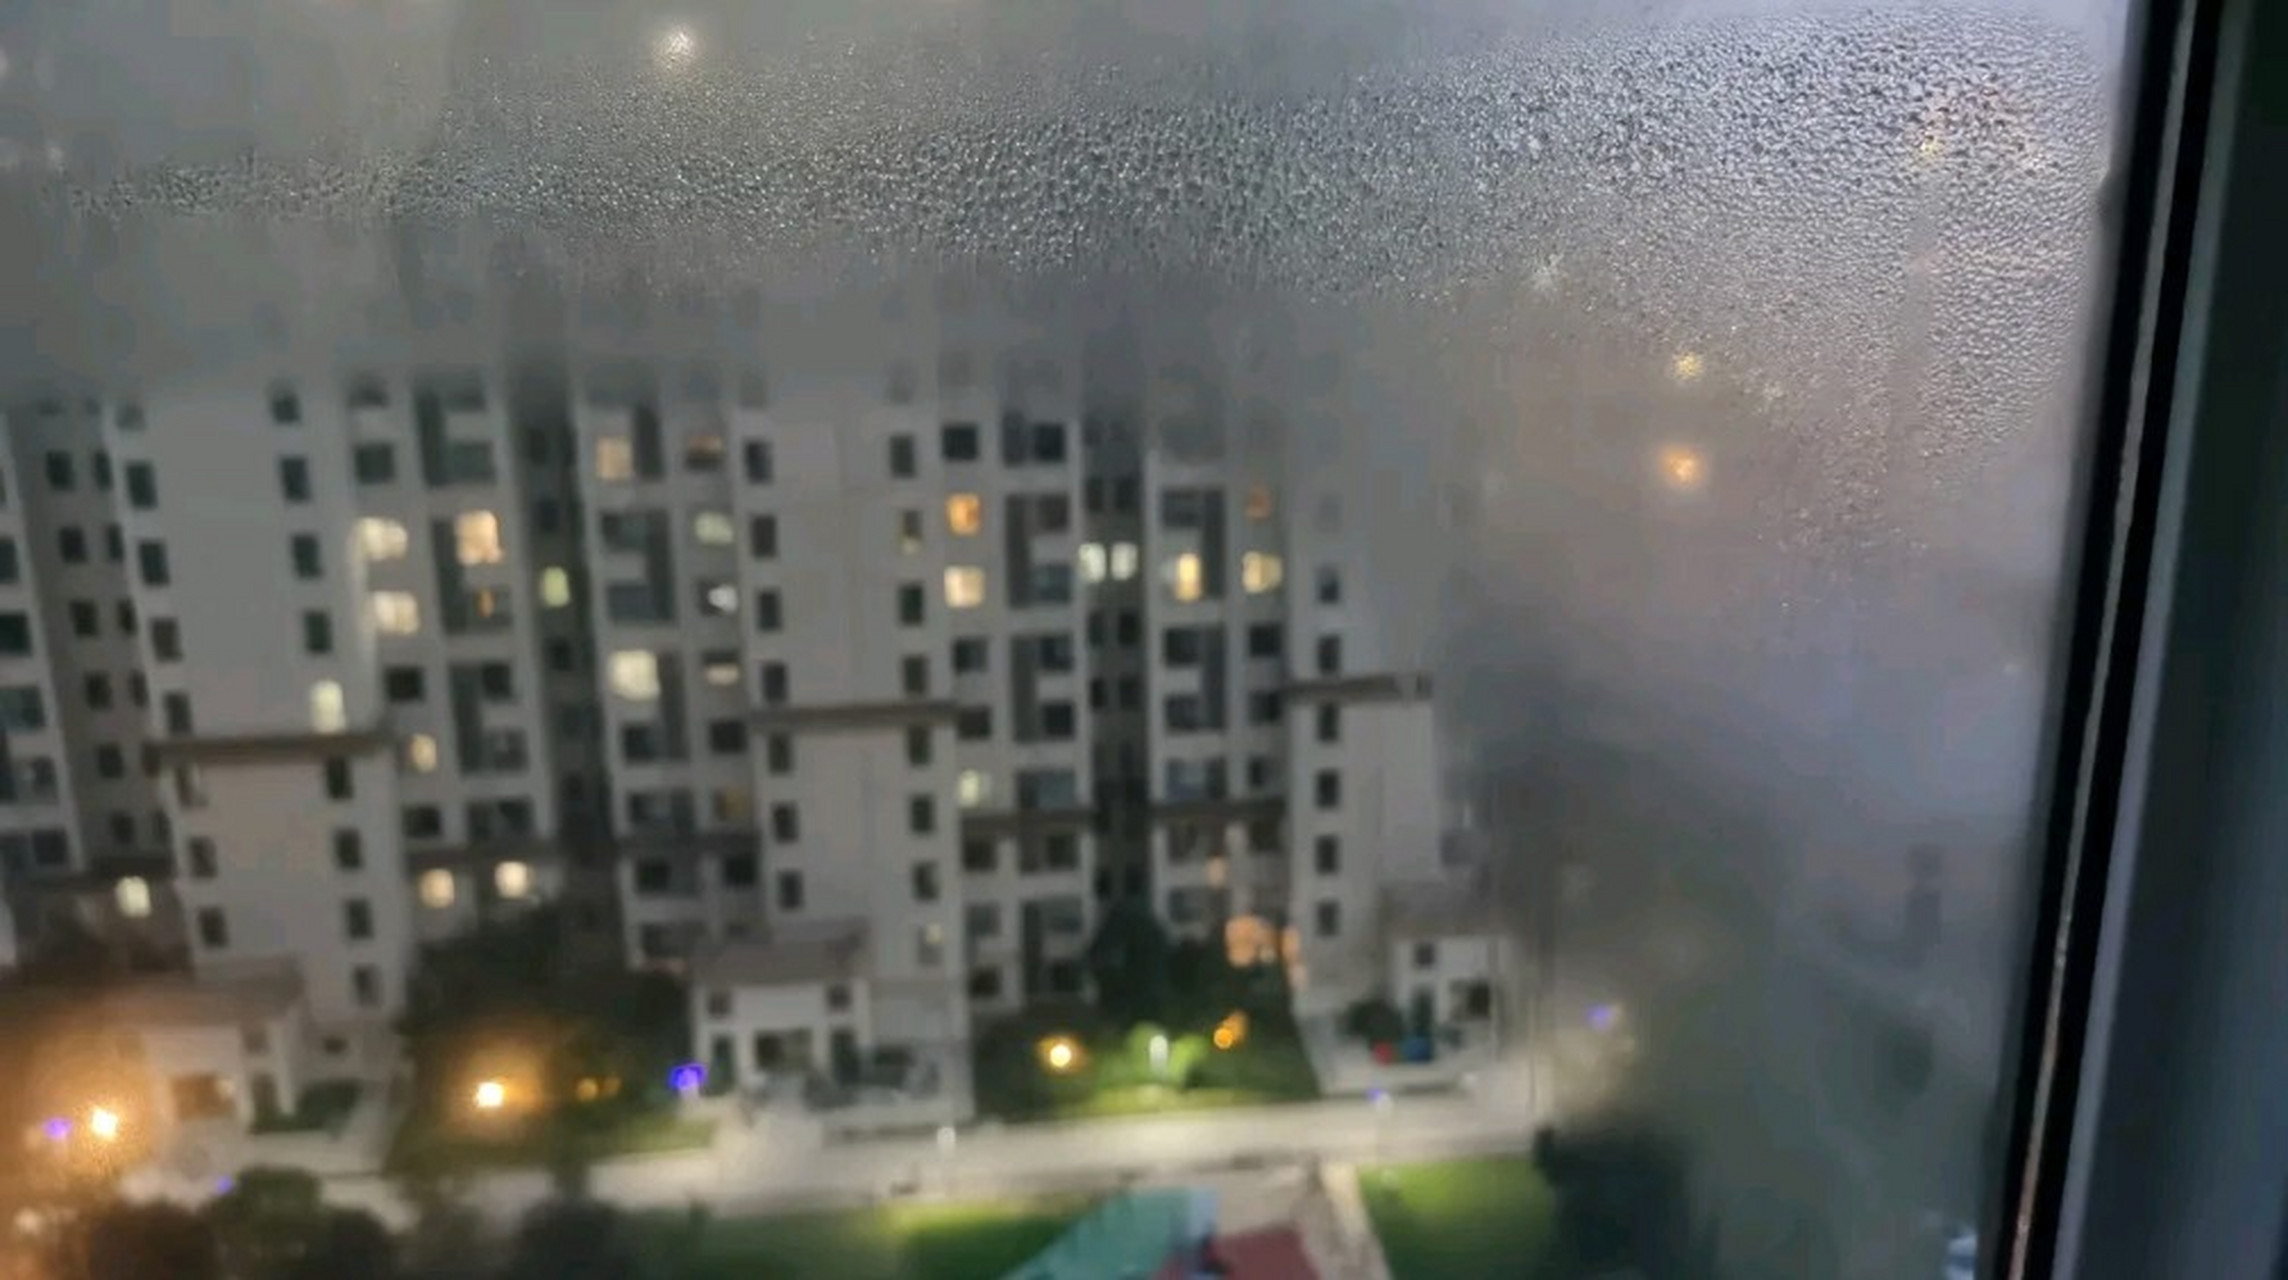 双层玻璃中间起雾图片